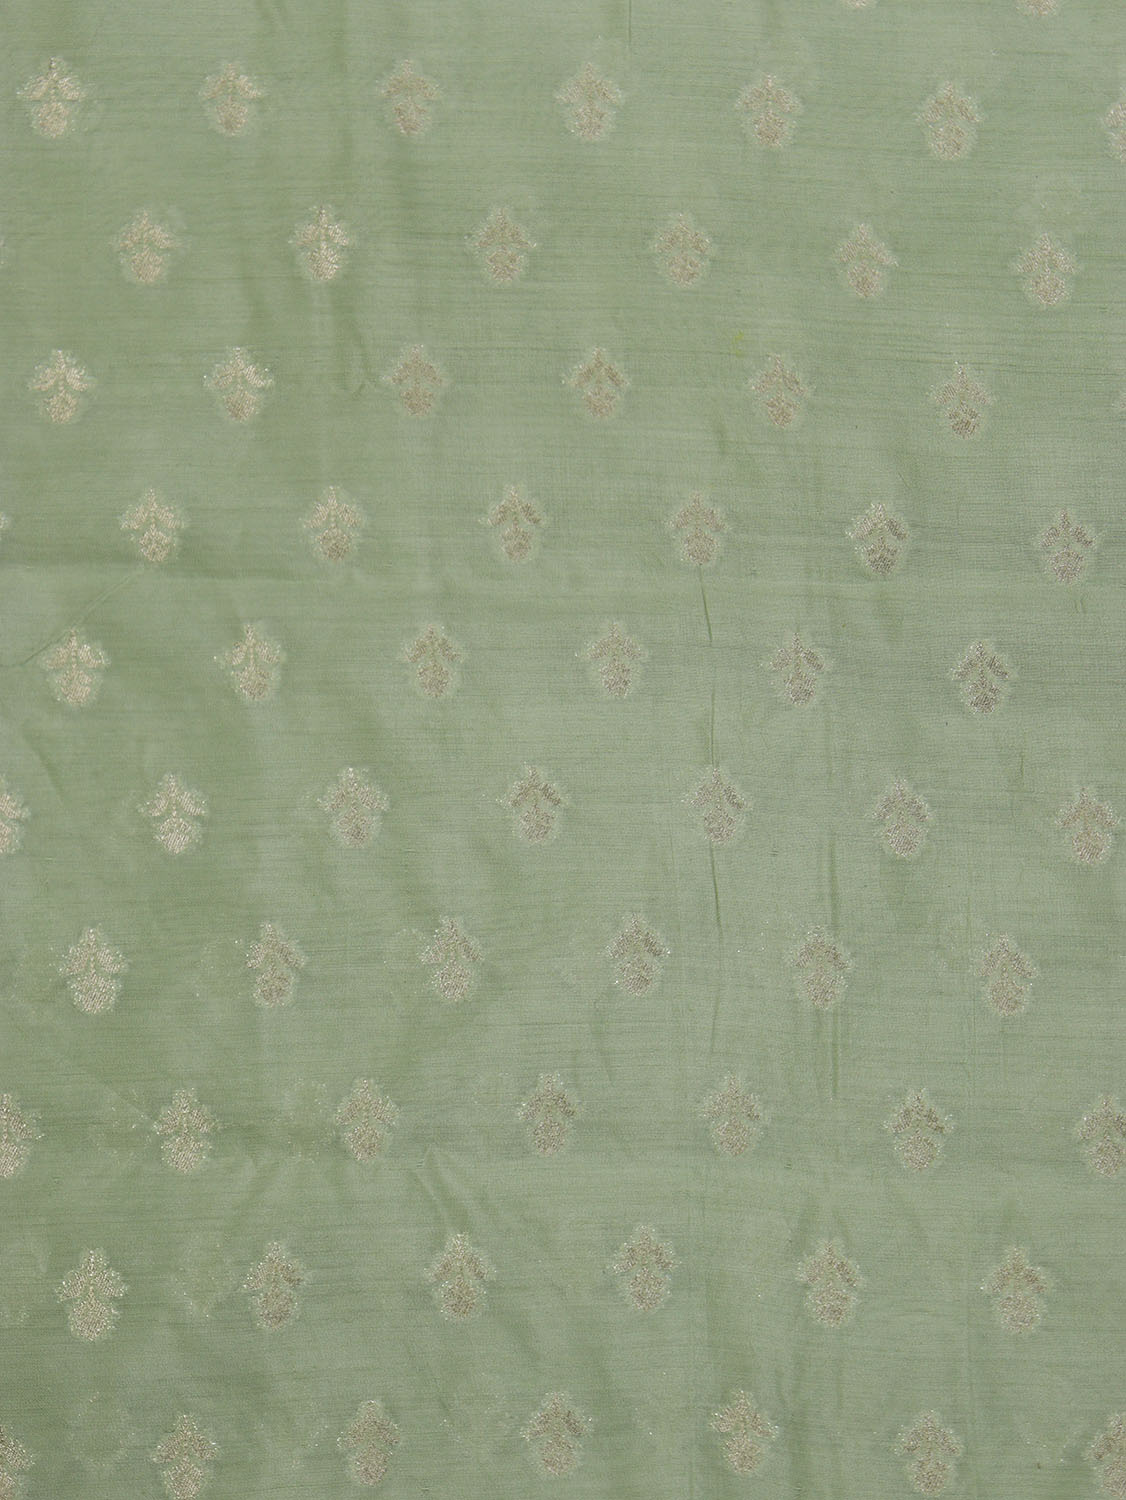 Green Banarasi Chiniya Silk Fabric - Luxurious 1 Mtr Length - Luxurion World